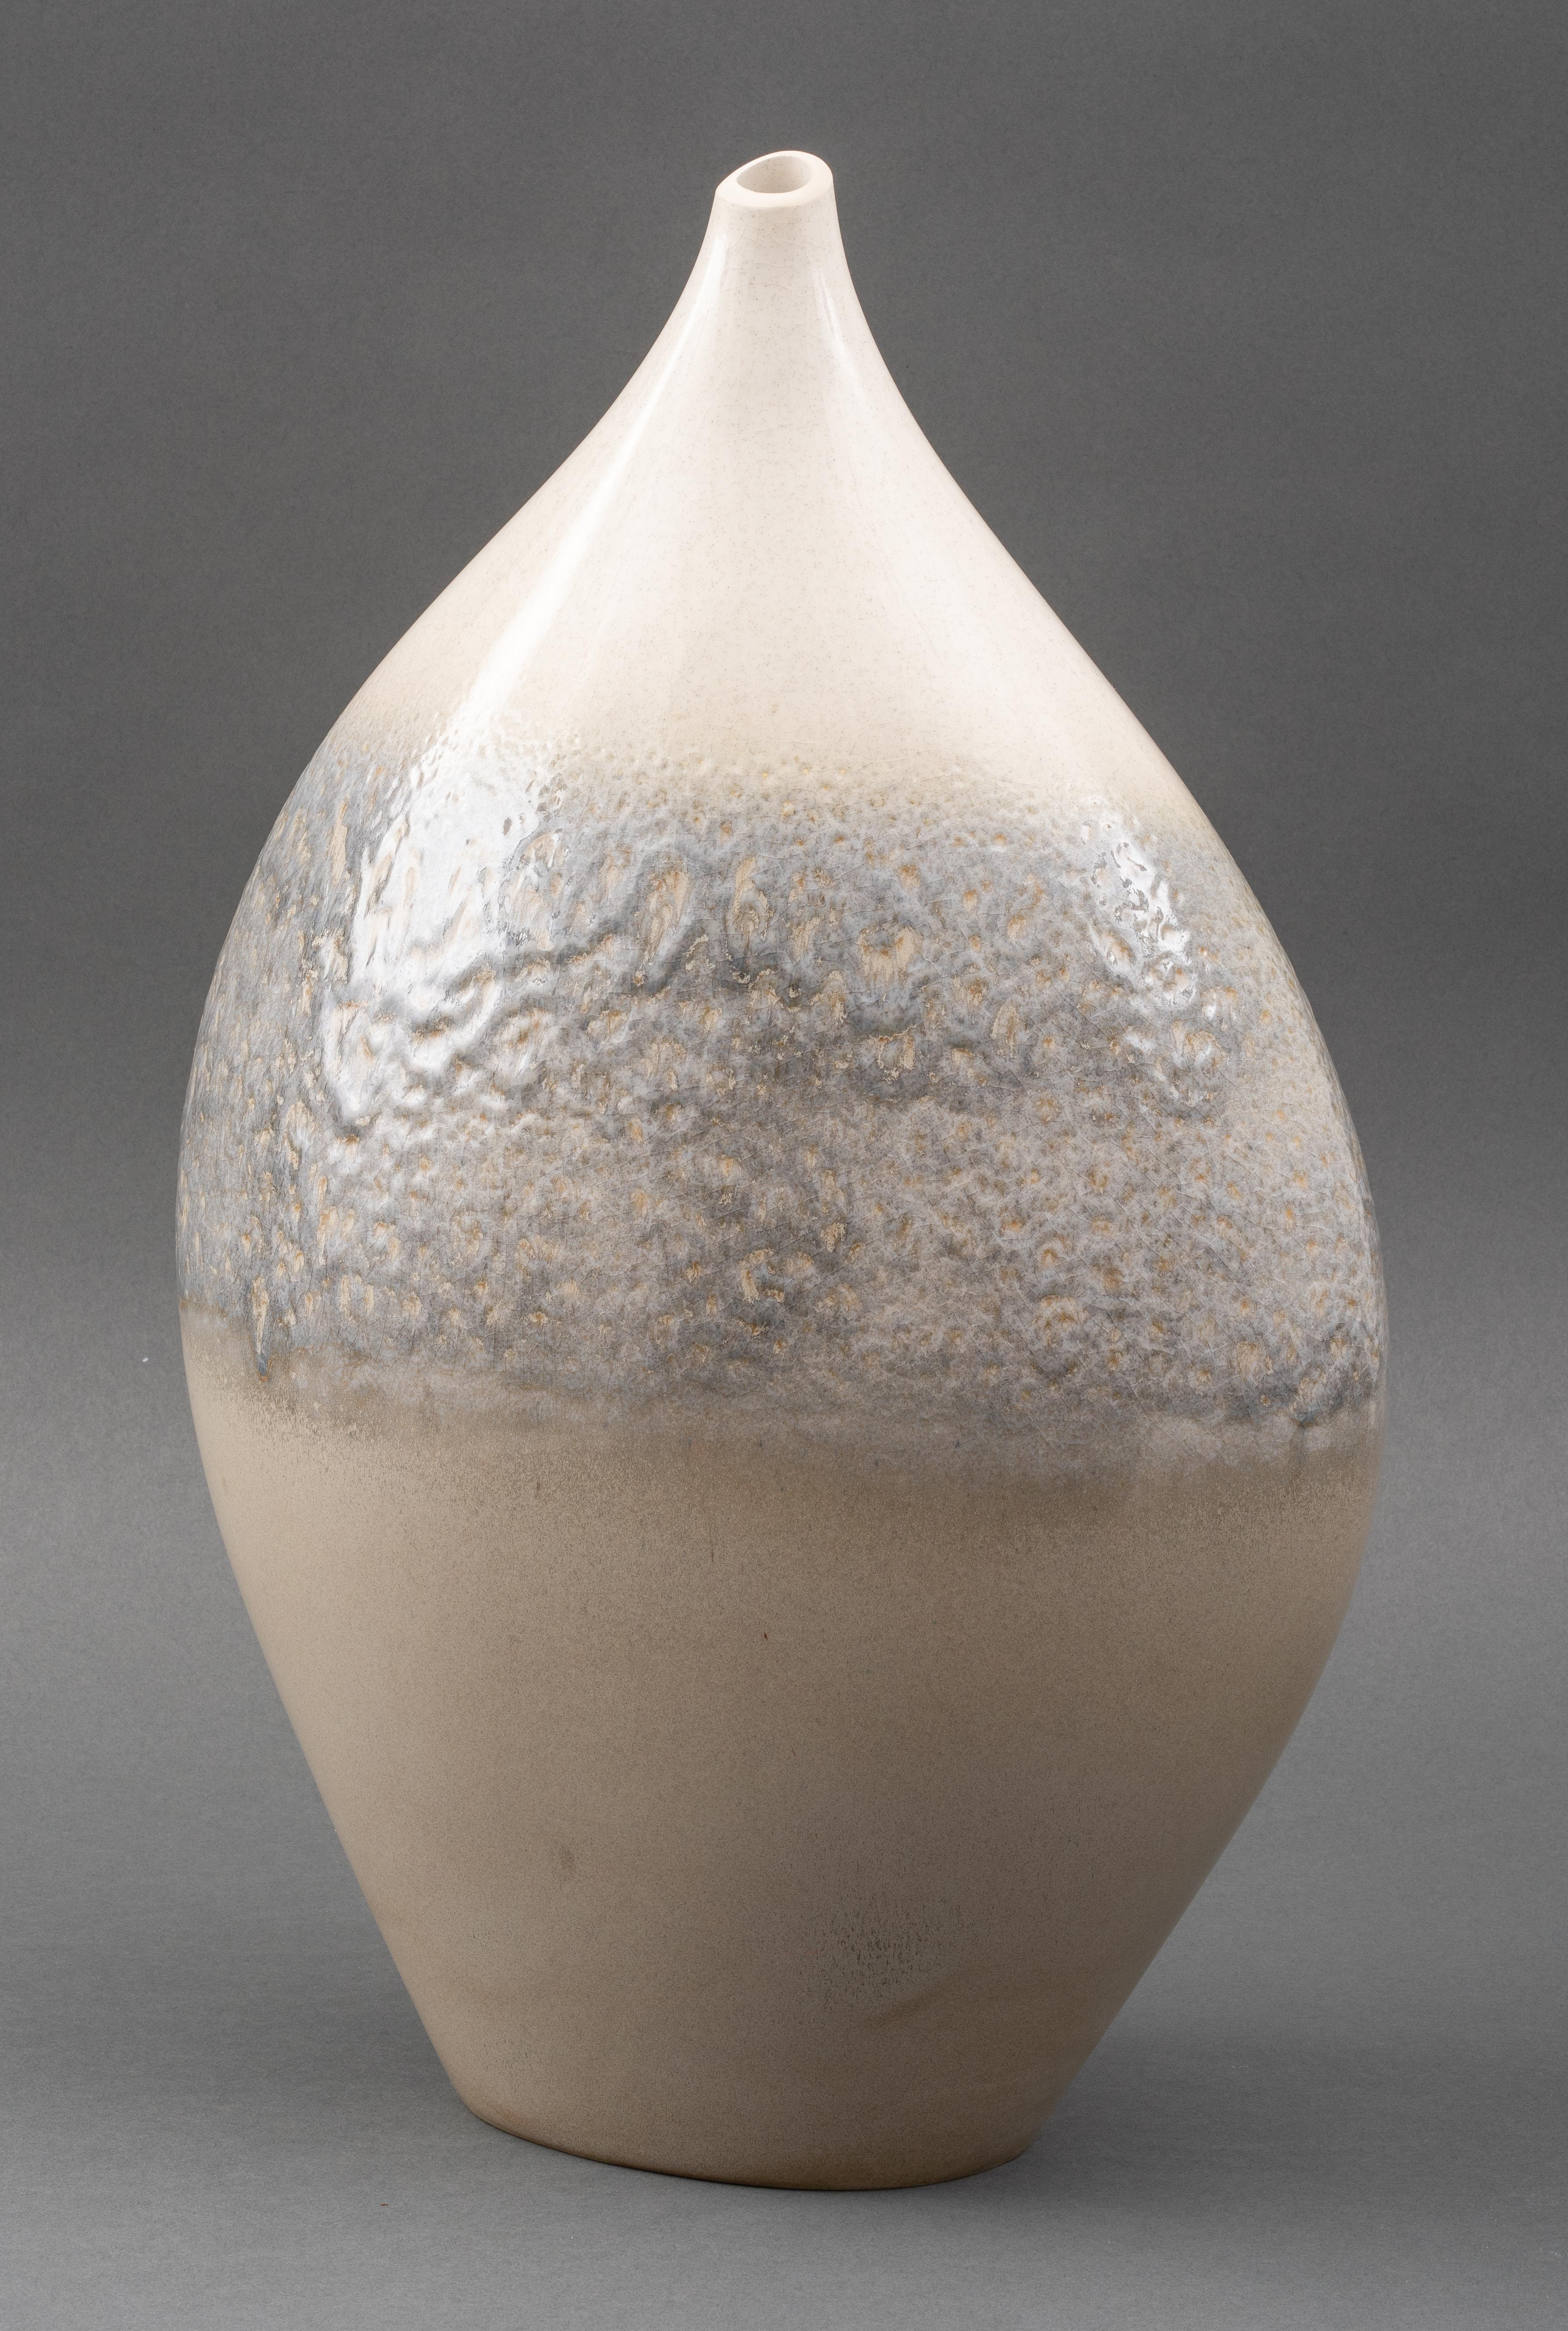 Moderne modernistische Vase aus glasierter Keramik, möglicherweise spanisch oder portugiesisch, mit cremefarbenen und grauen ombre-strukturierten Glasuren. 
Maße: 20,5